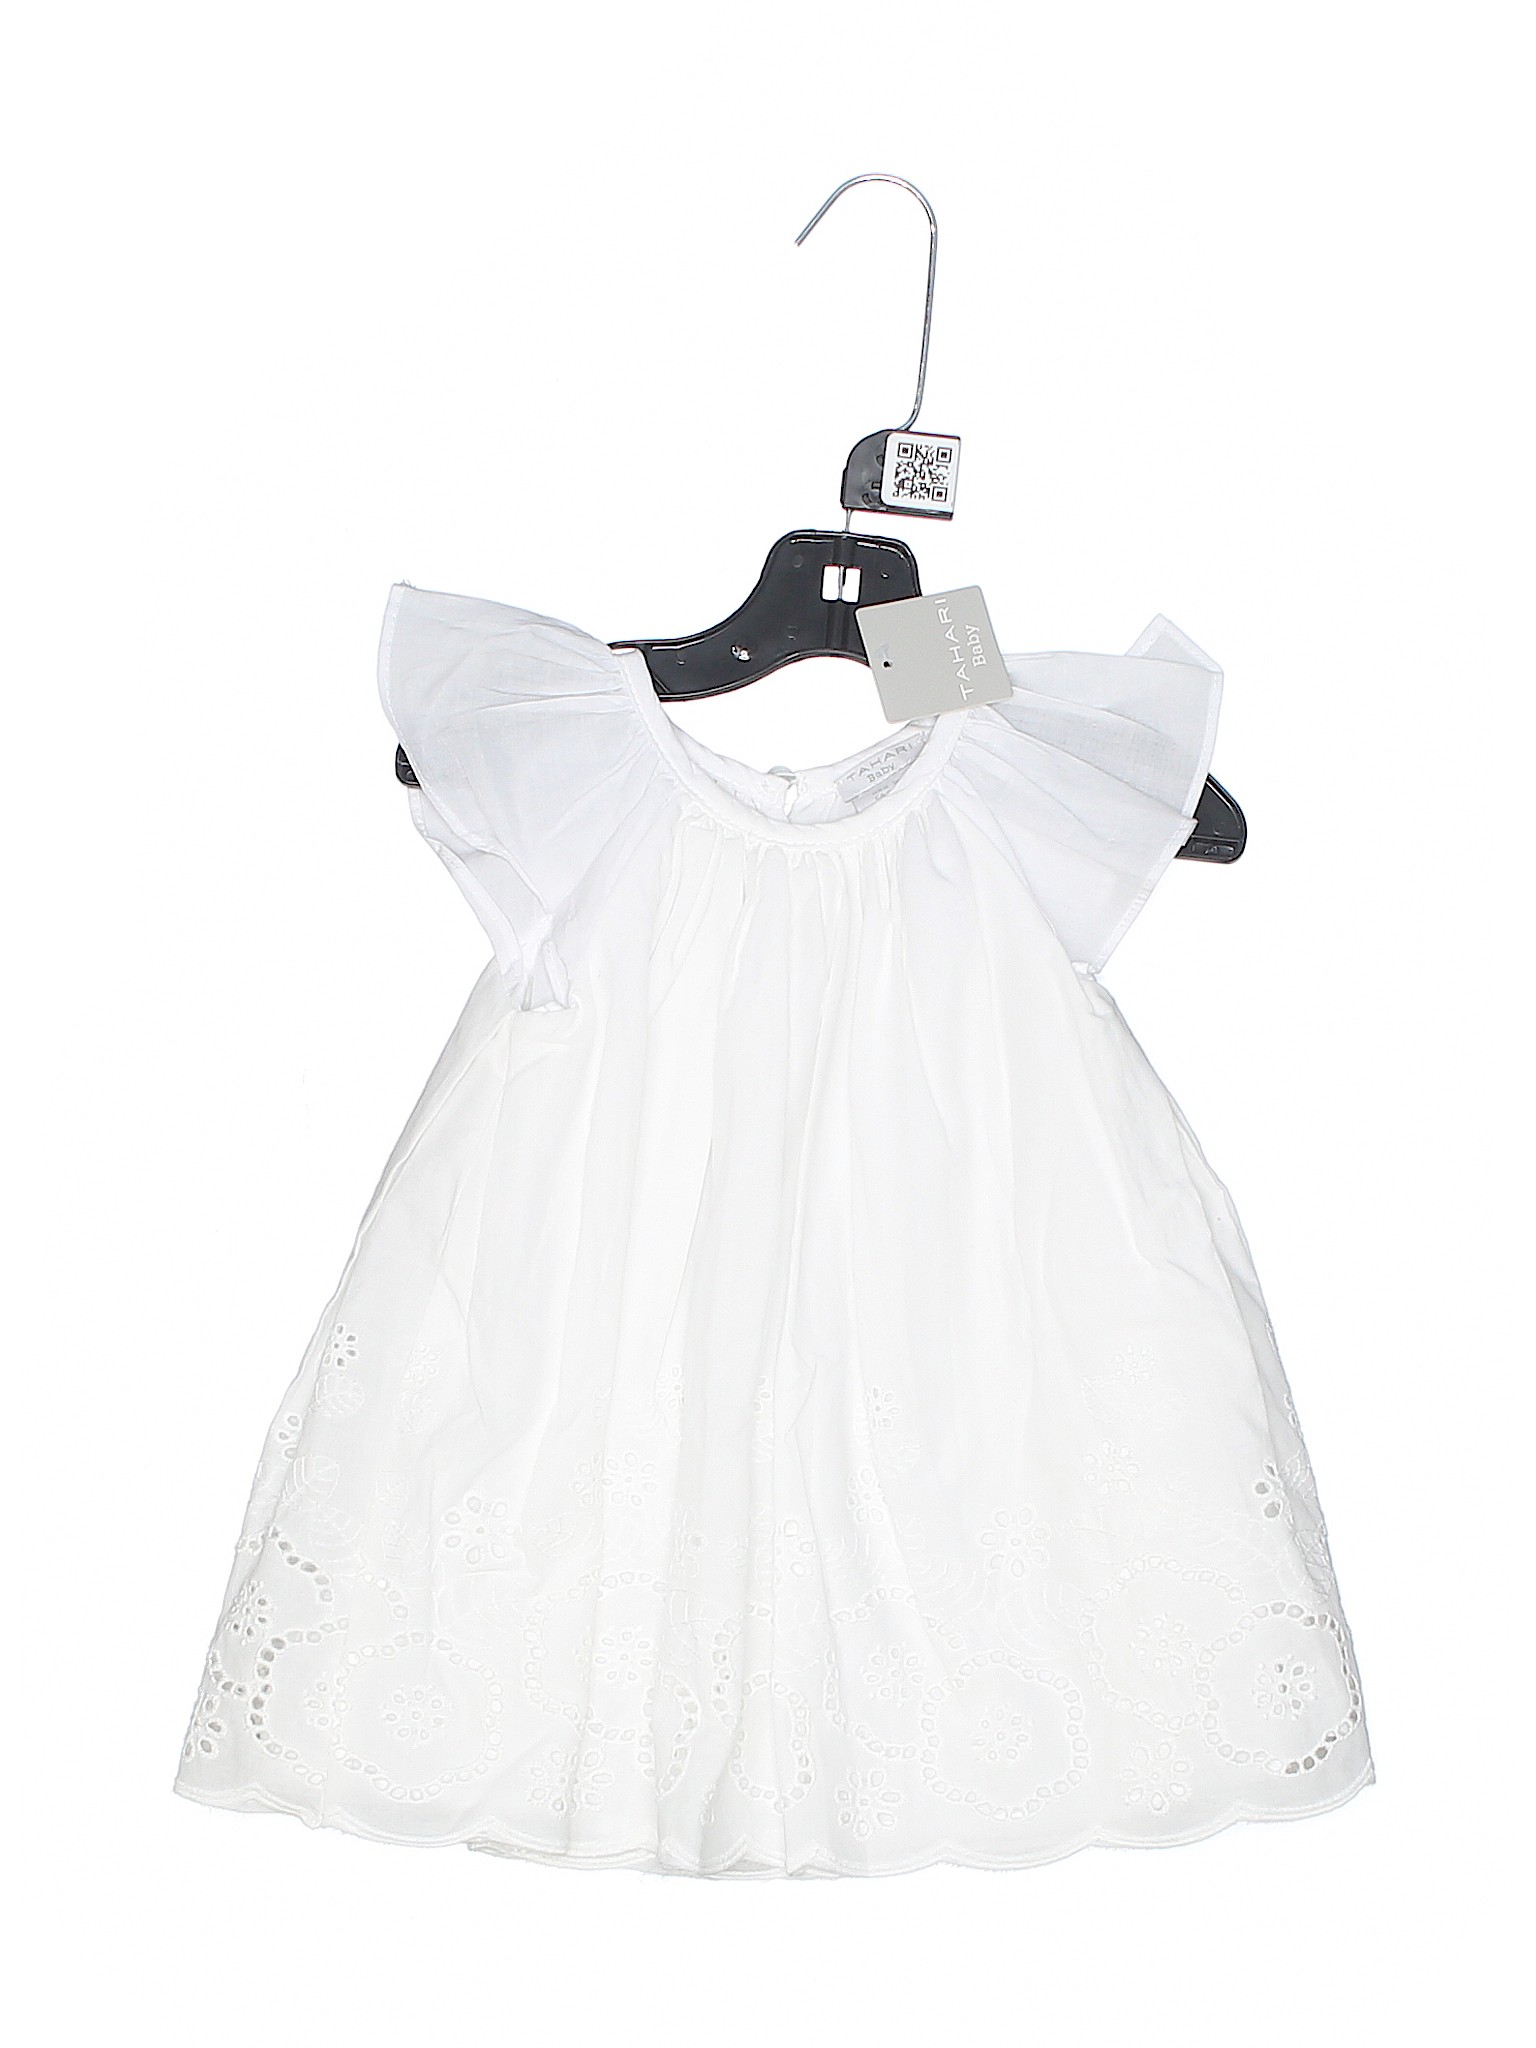 tahari baby white dress